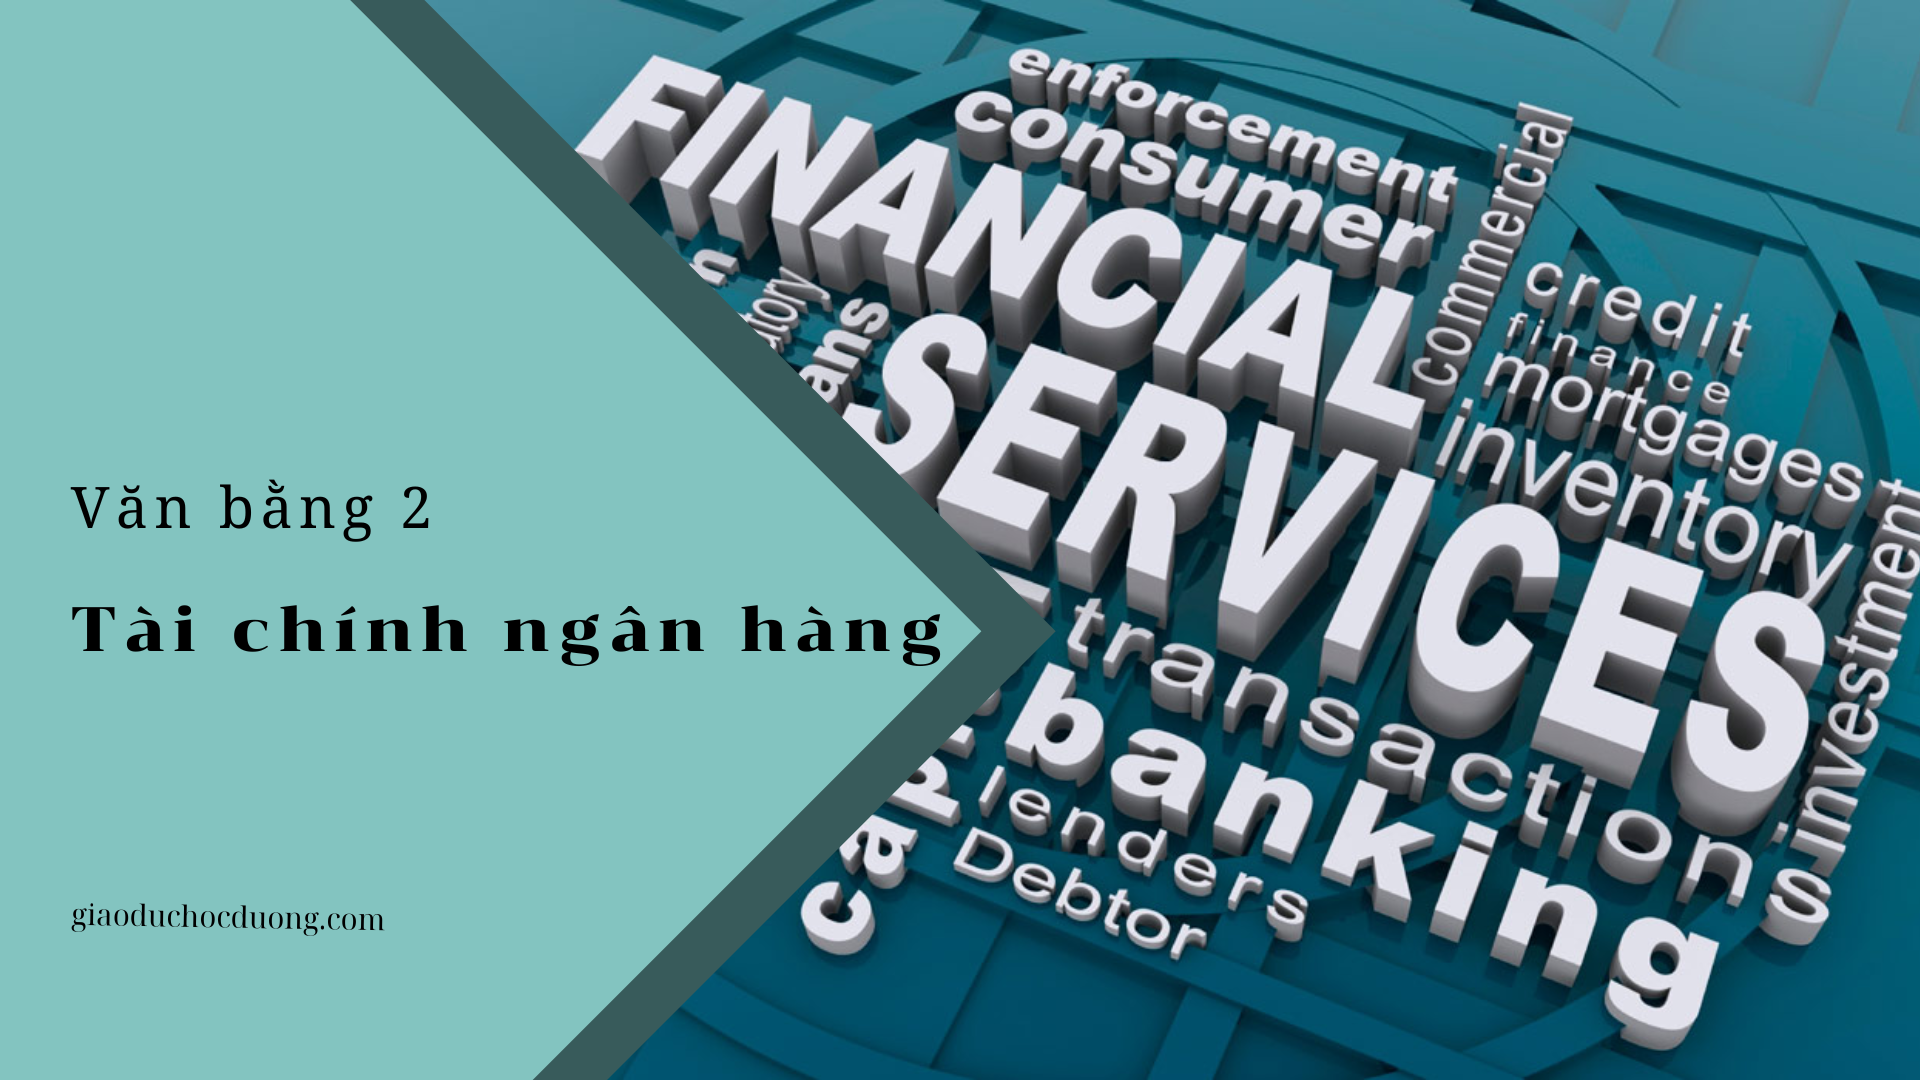 Văn bằng 2 ngành Tài chính ngân hàng – Bước đi củng cố tương lai